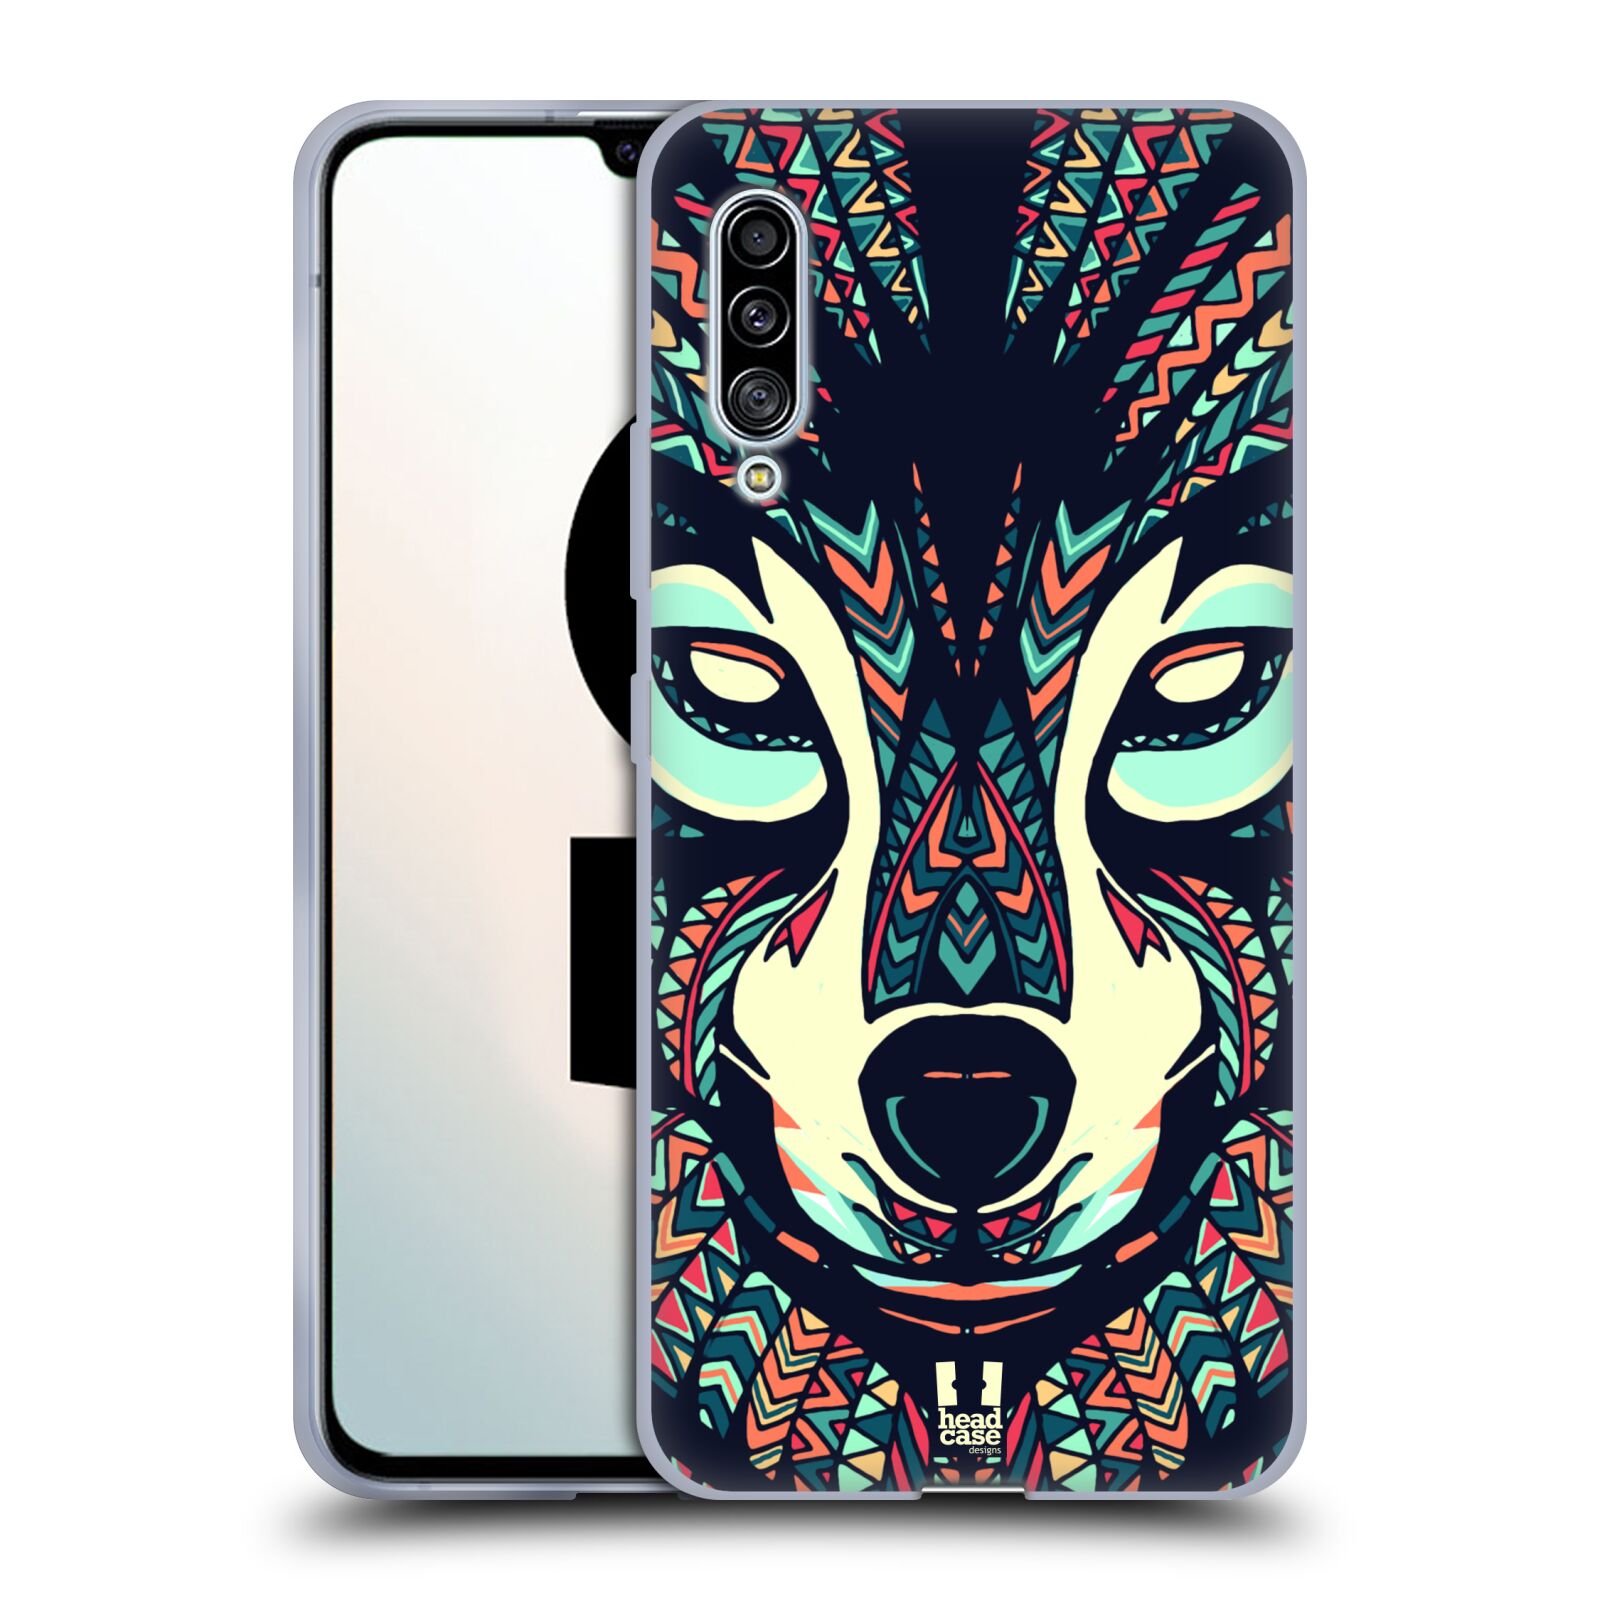 Plastový obal HEAD CASE na mobil Samsung Galaxy A90 5G vzor Aztécký motiv zvíře 3 vlk